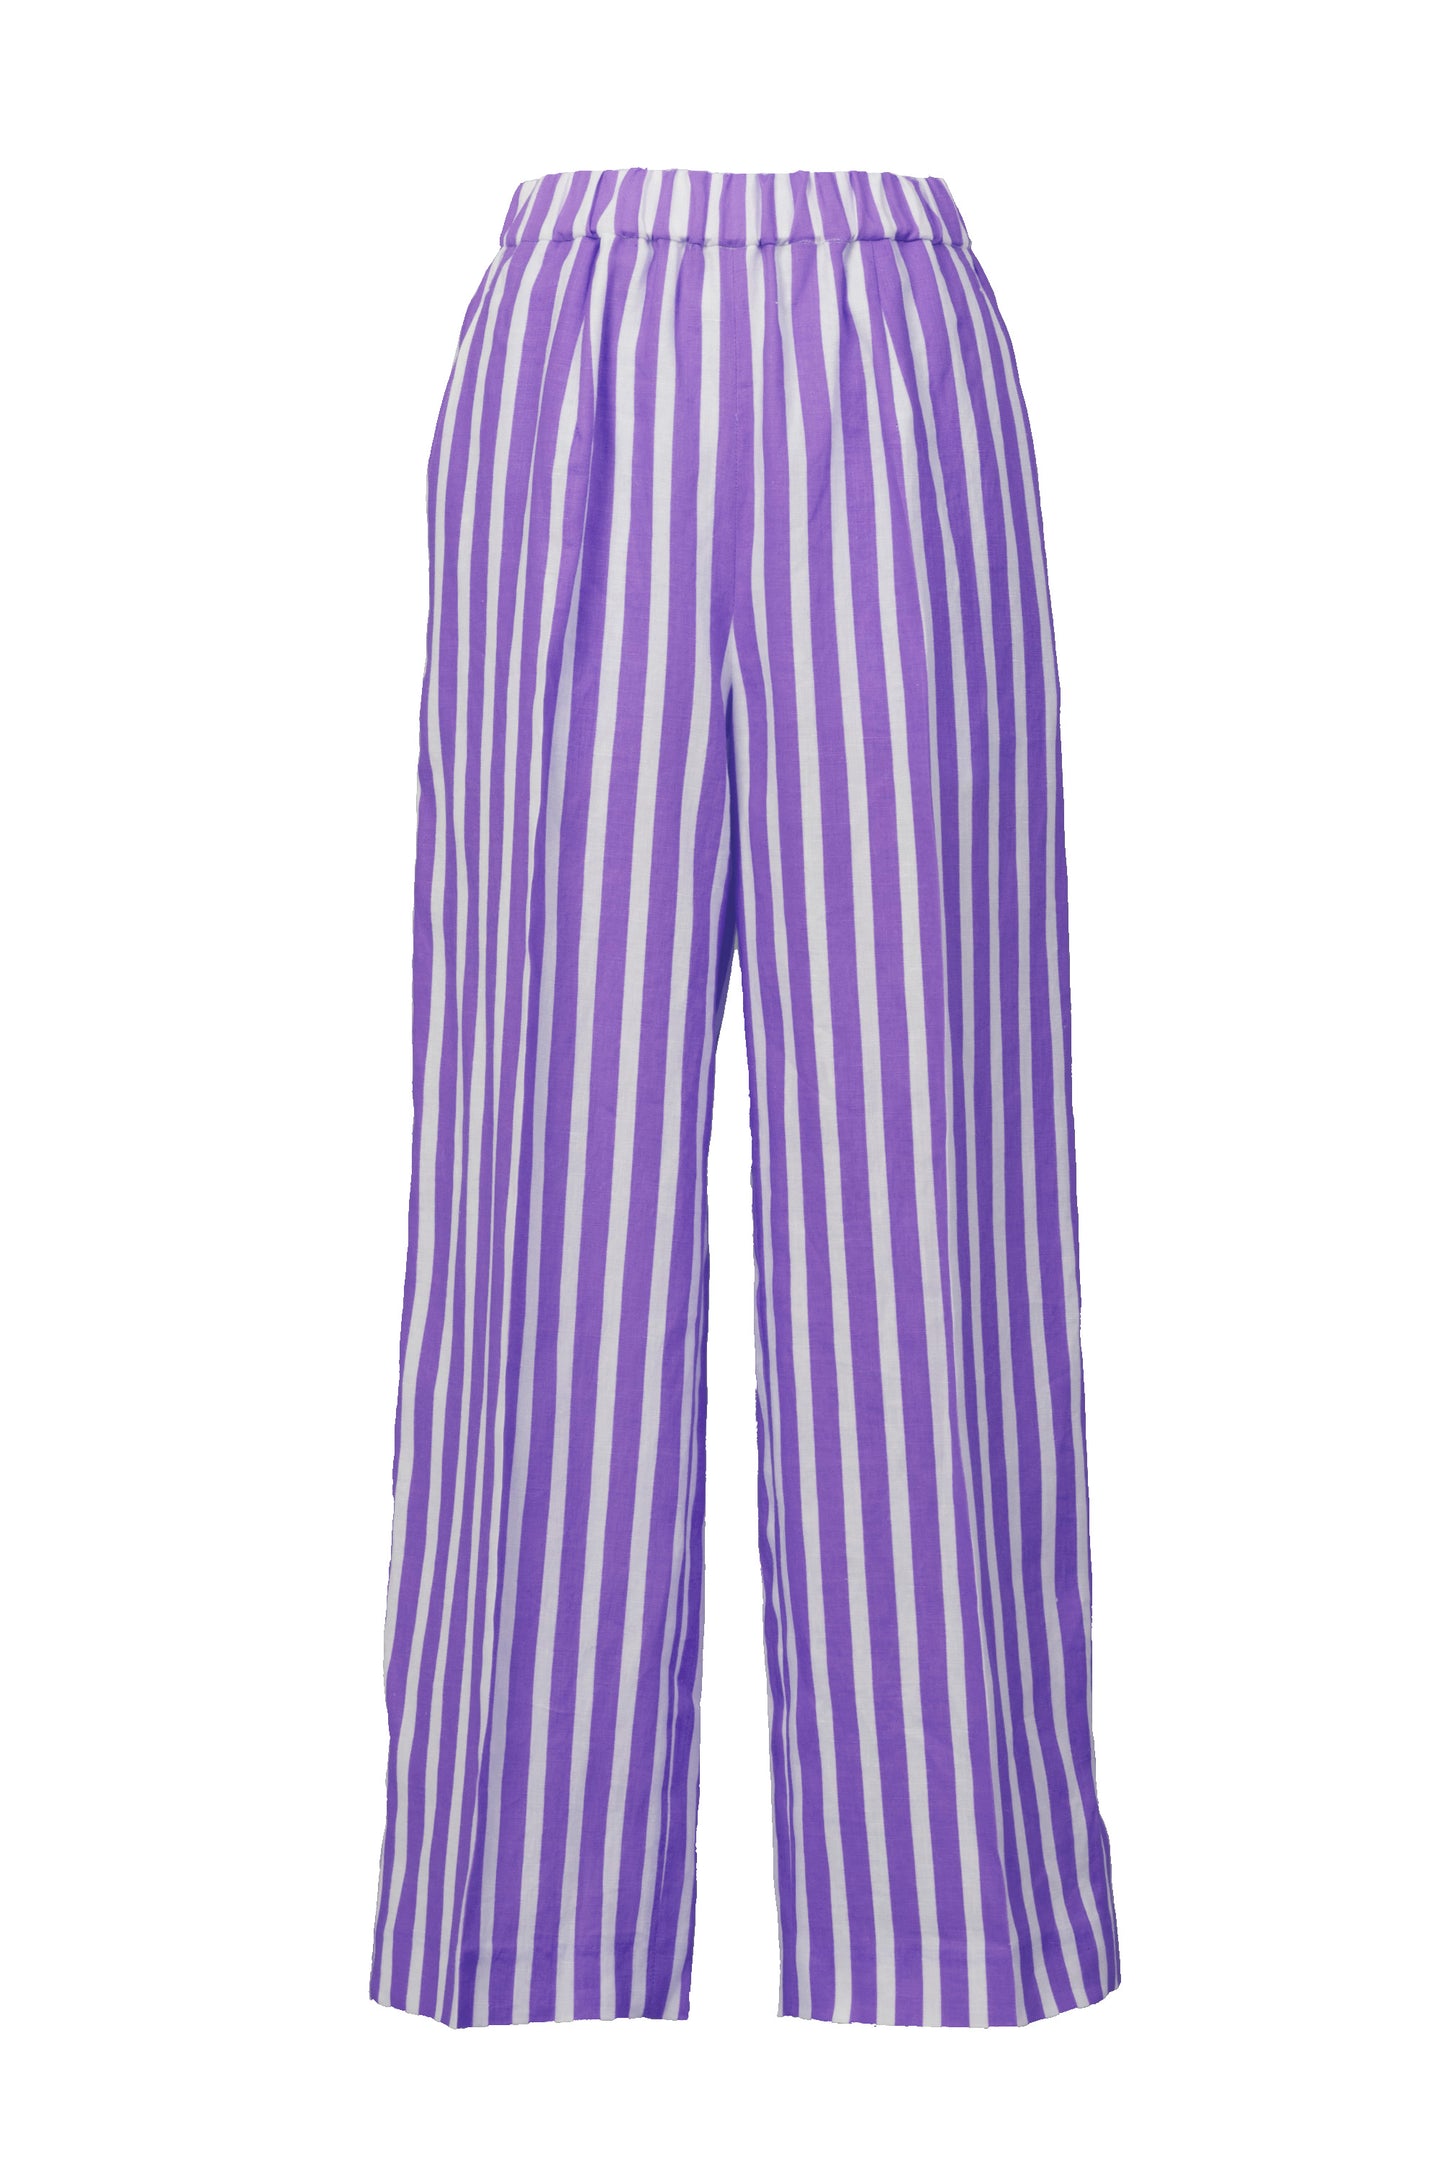 Stripe Pants | Lilac